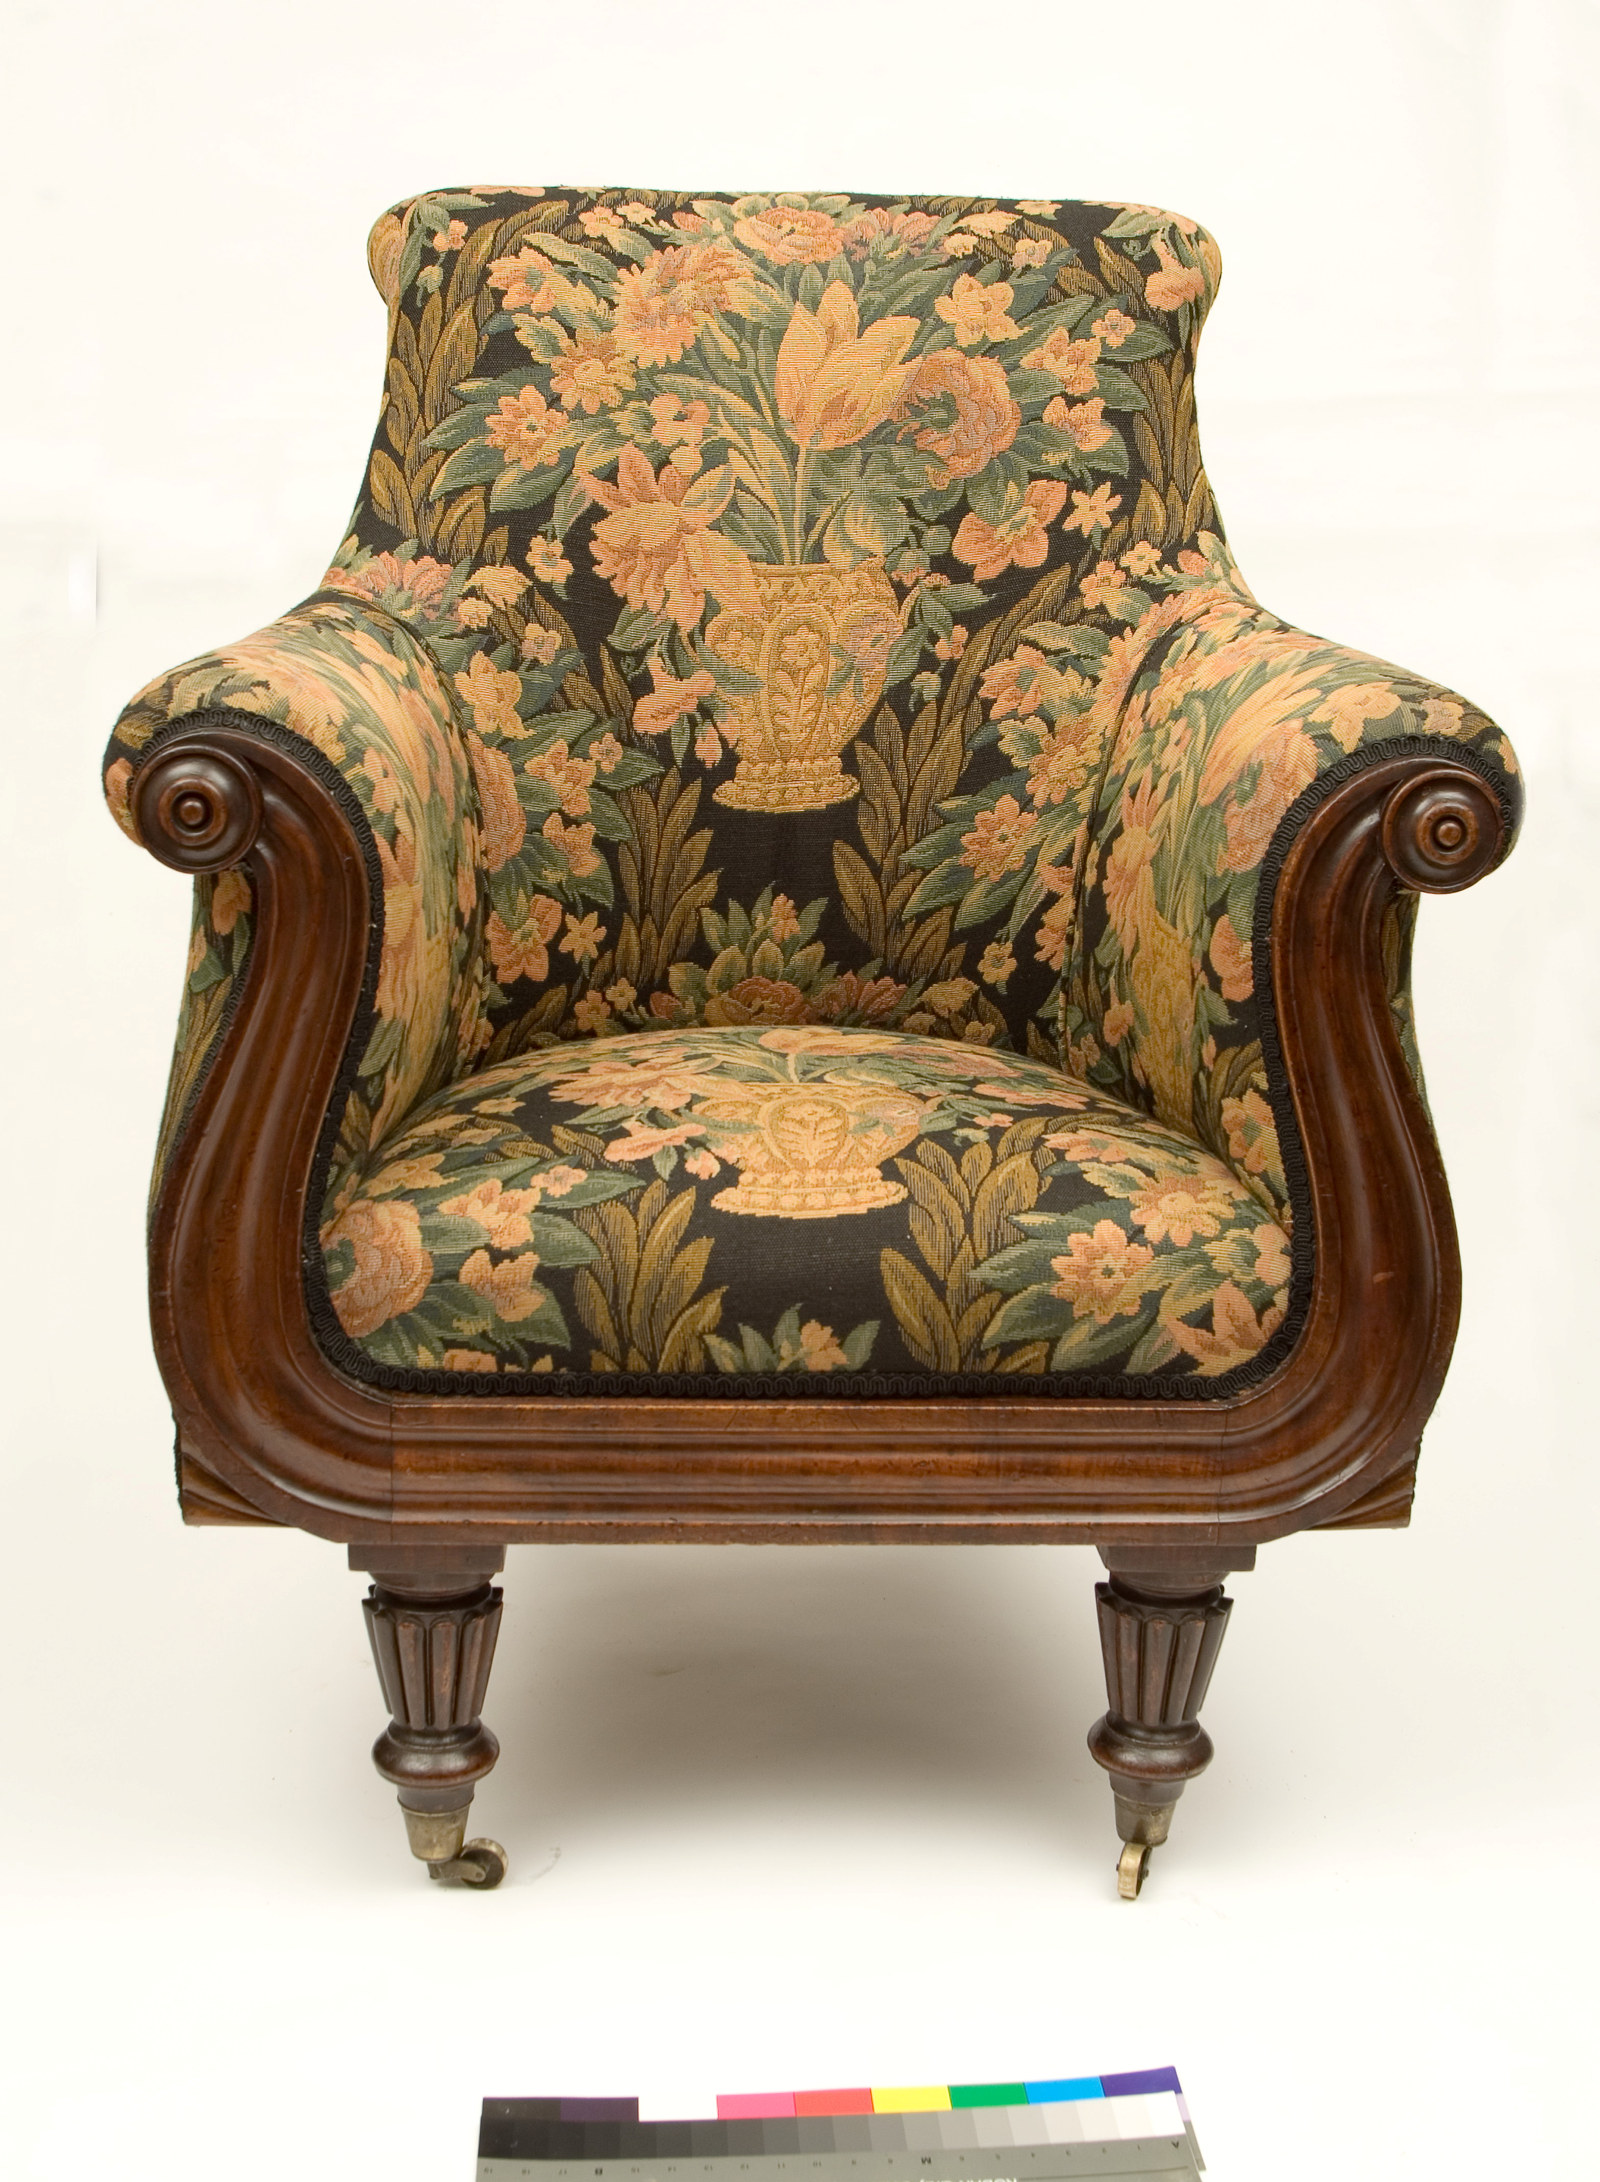 Arm chair, c1840